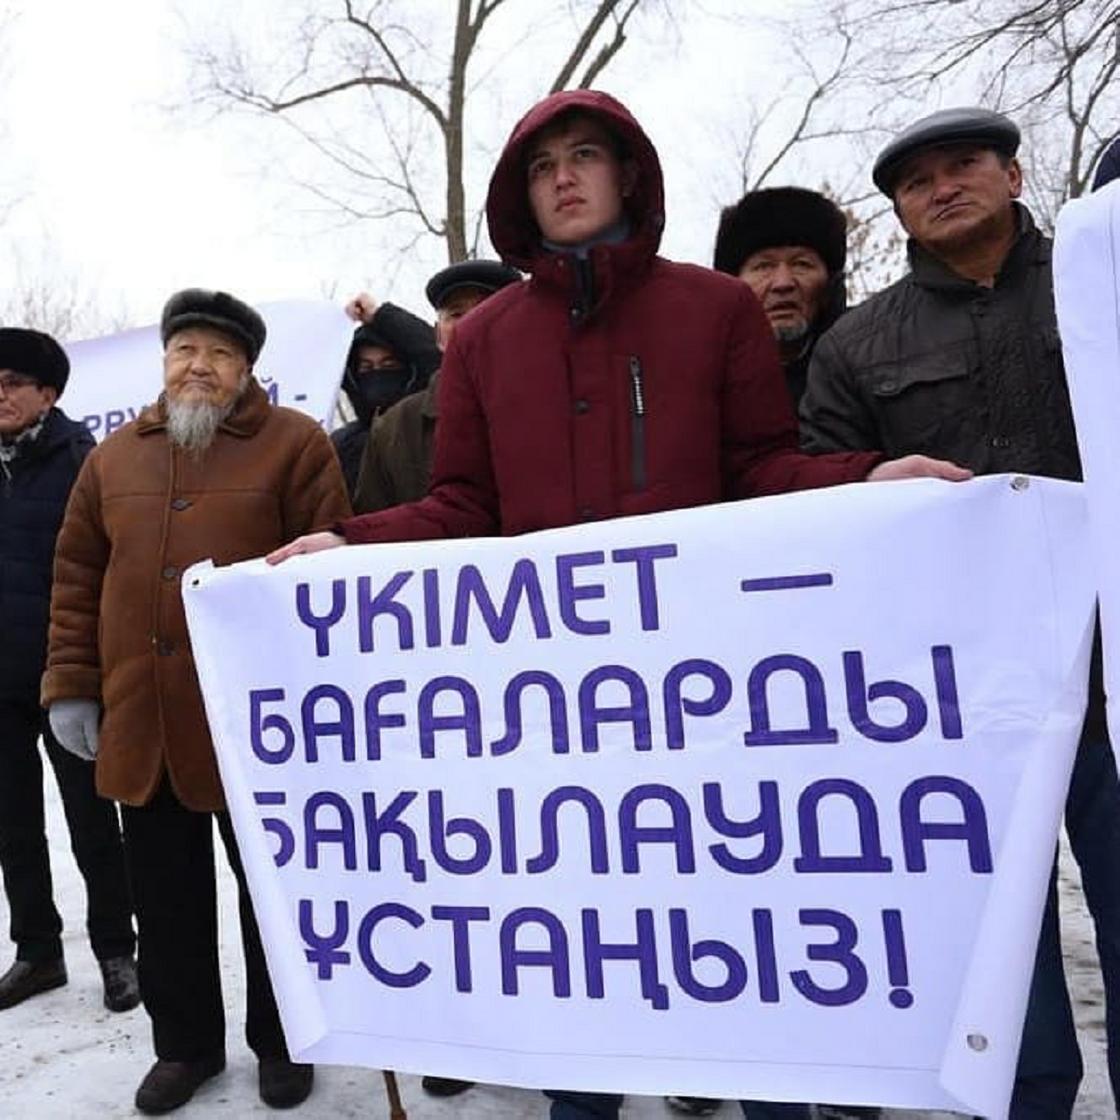 Мирный митинг против роста цен на продовольственные товары и коррупции прошёл в Уральске